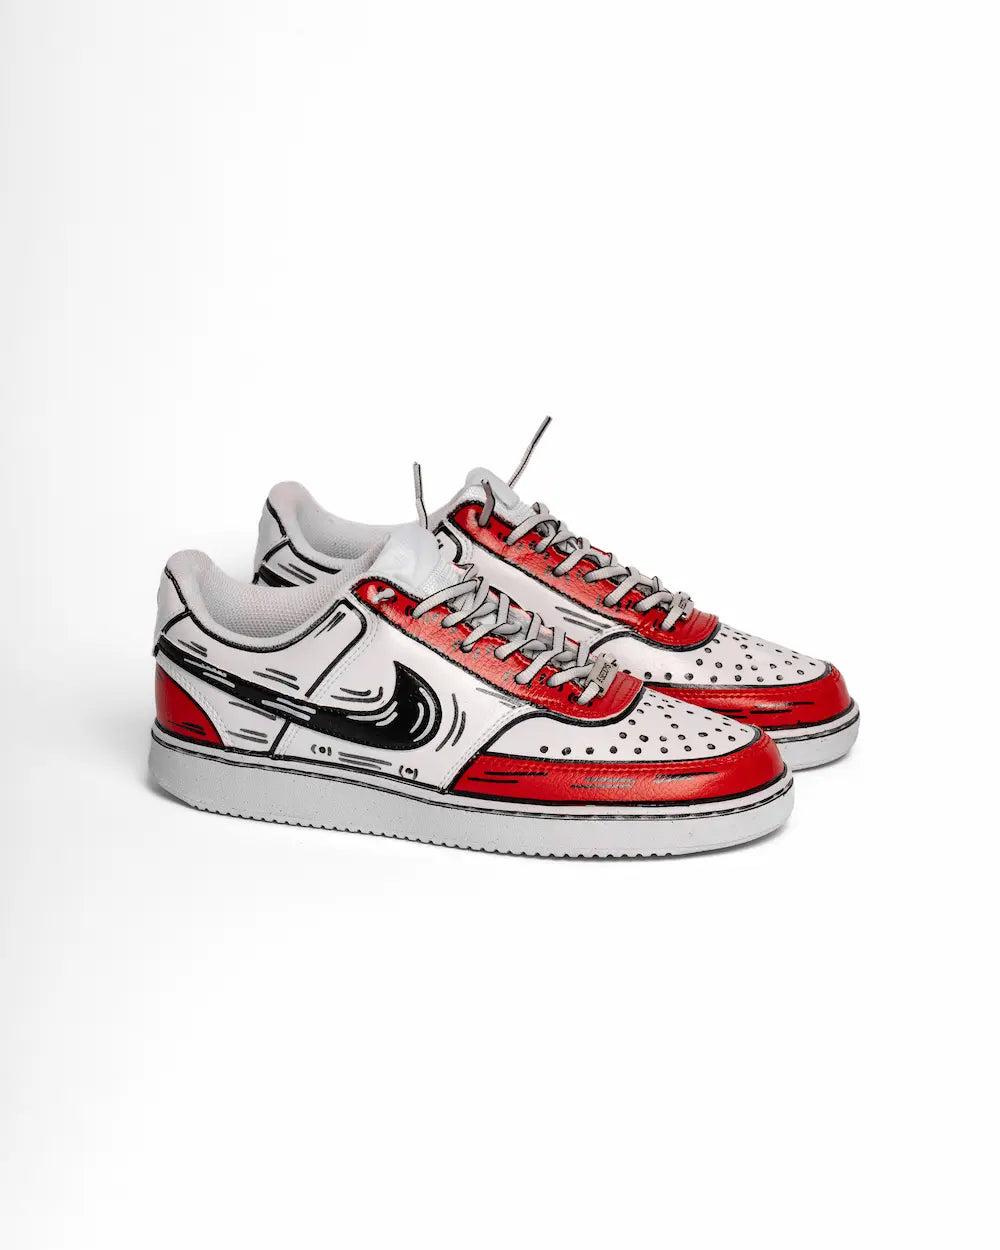 Comics Red & Black su Nike Court Vision, sneaker dipinta a mano effetto fumetto in tonalità rosso e nero